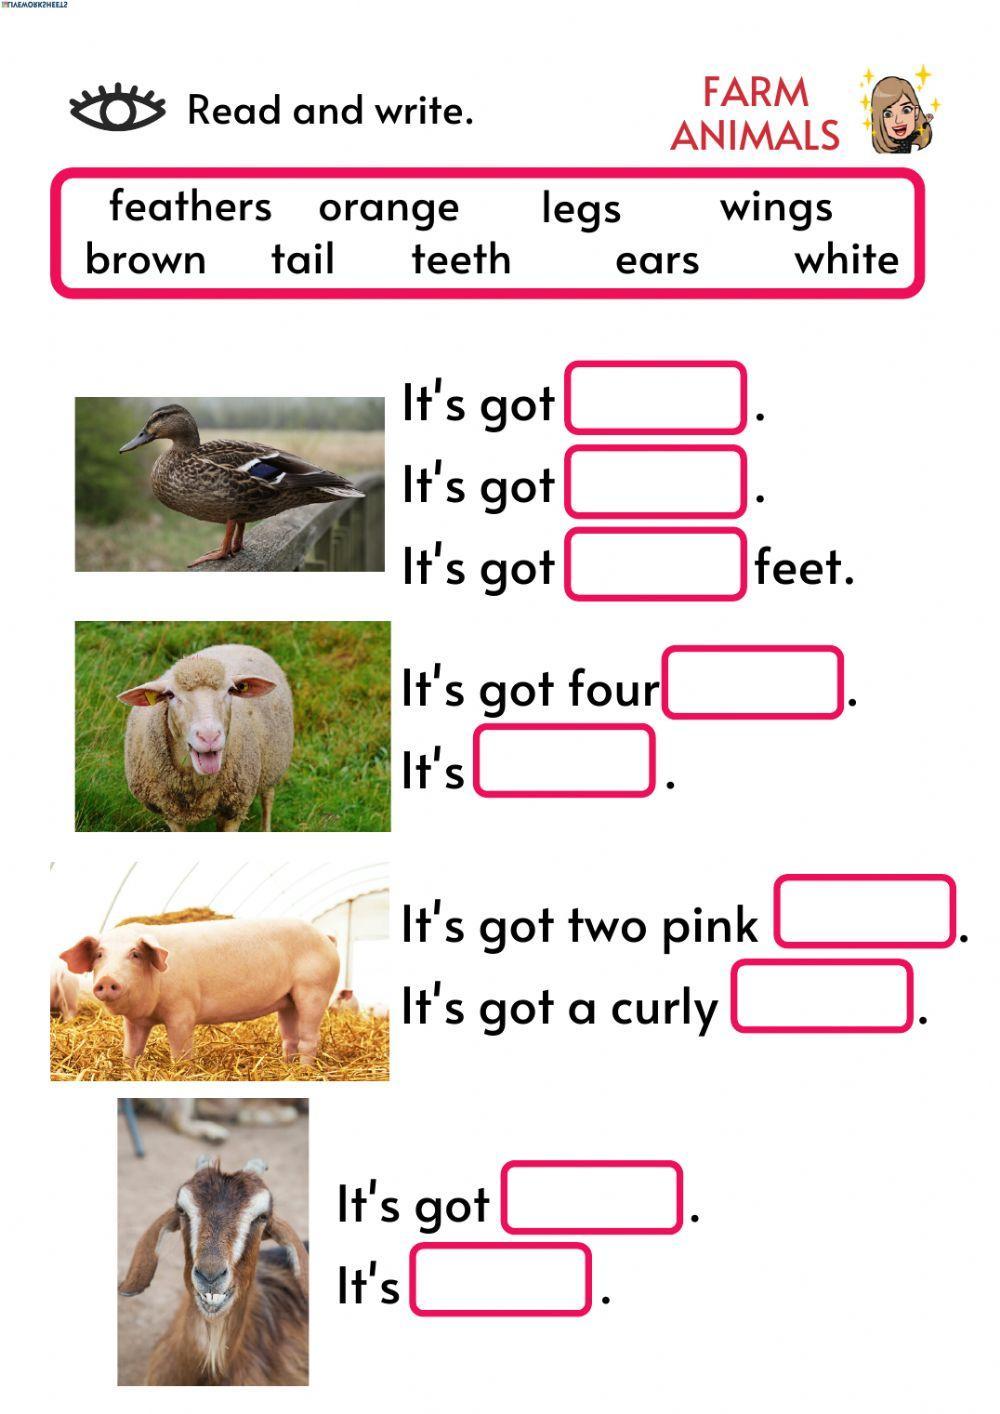 Describing farm animals